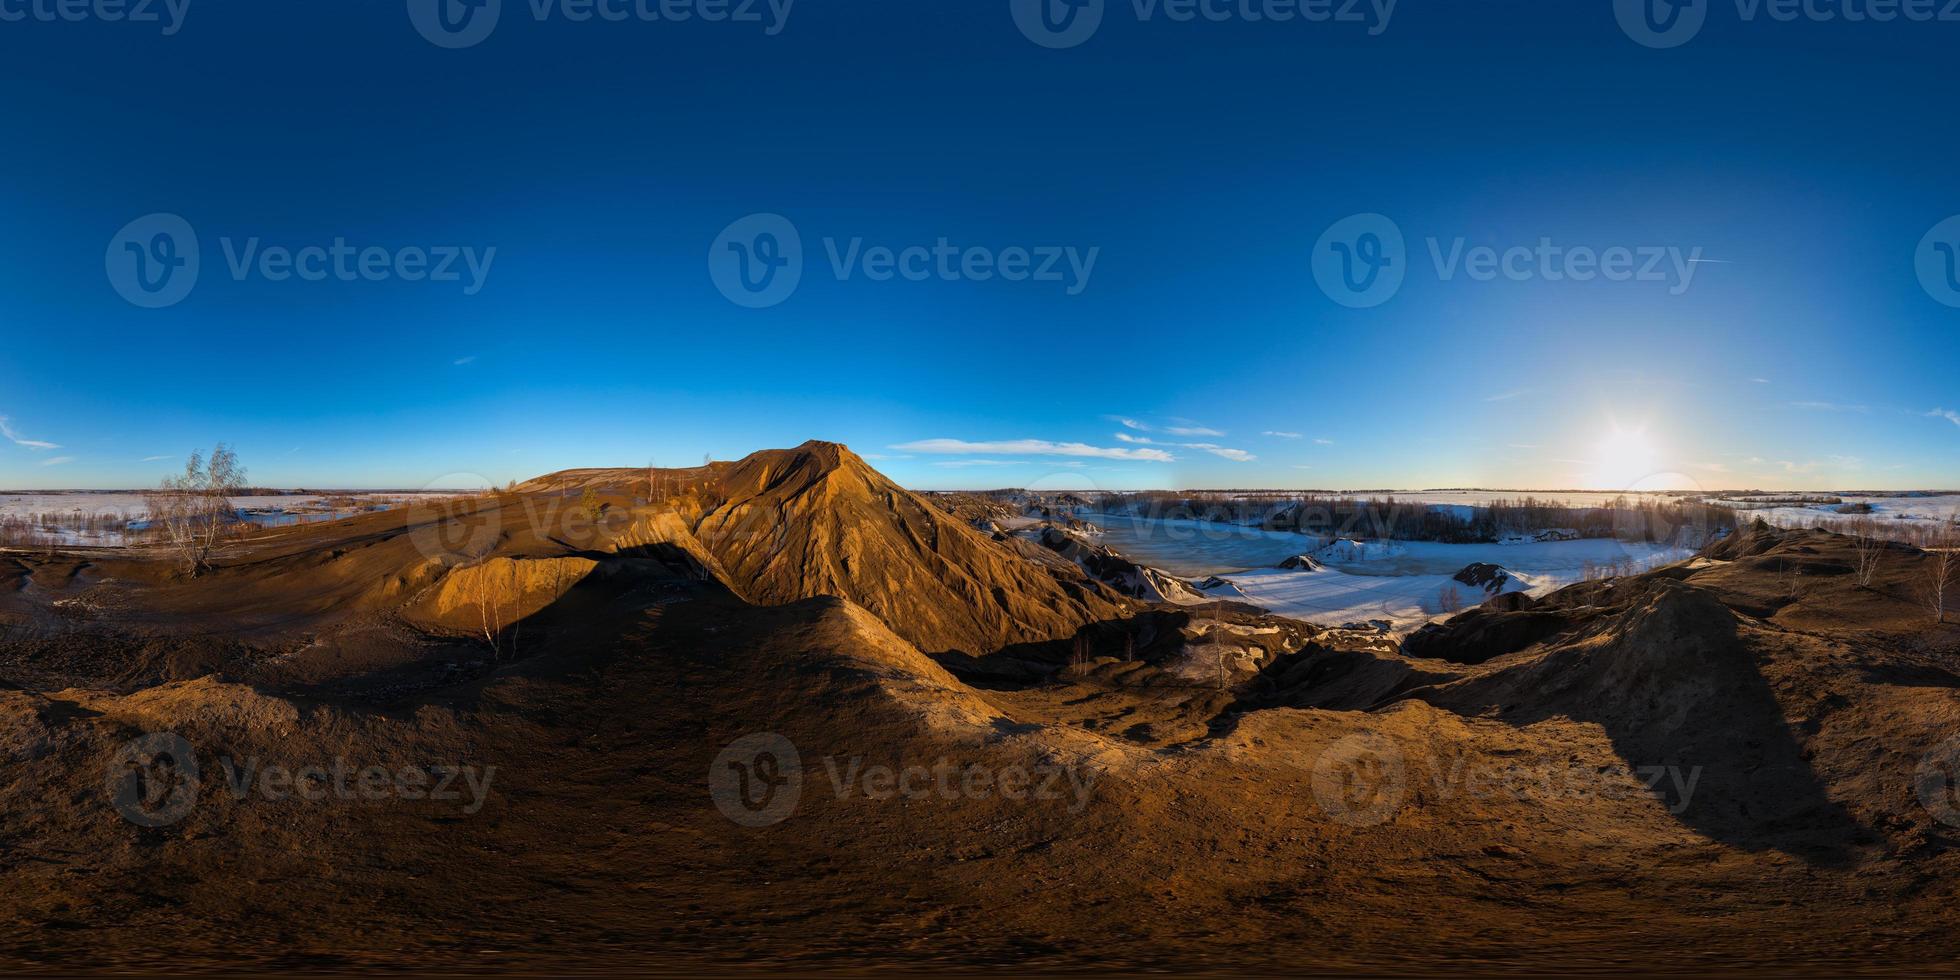 lera kullar stenbrott på kvist solnedgång sfärisk 360 grad panorama i likriktad utsprång foto